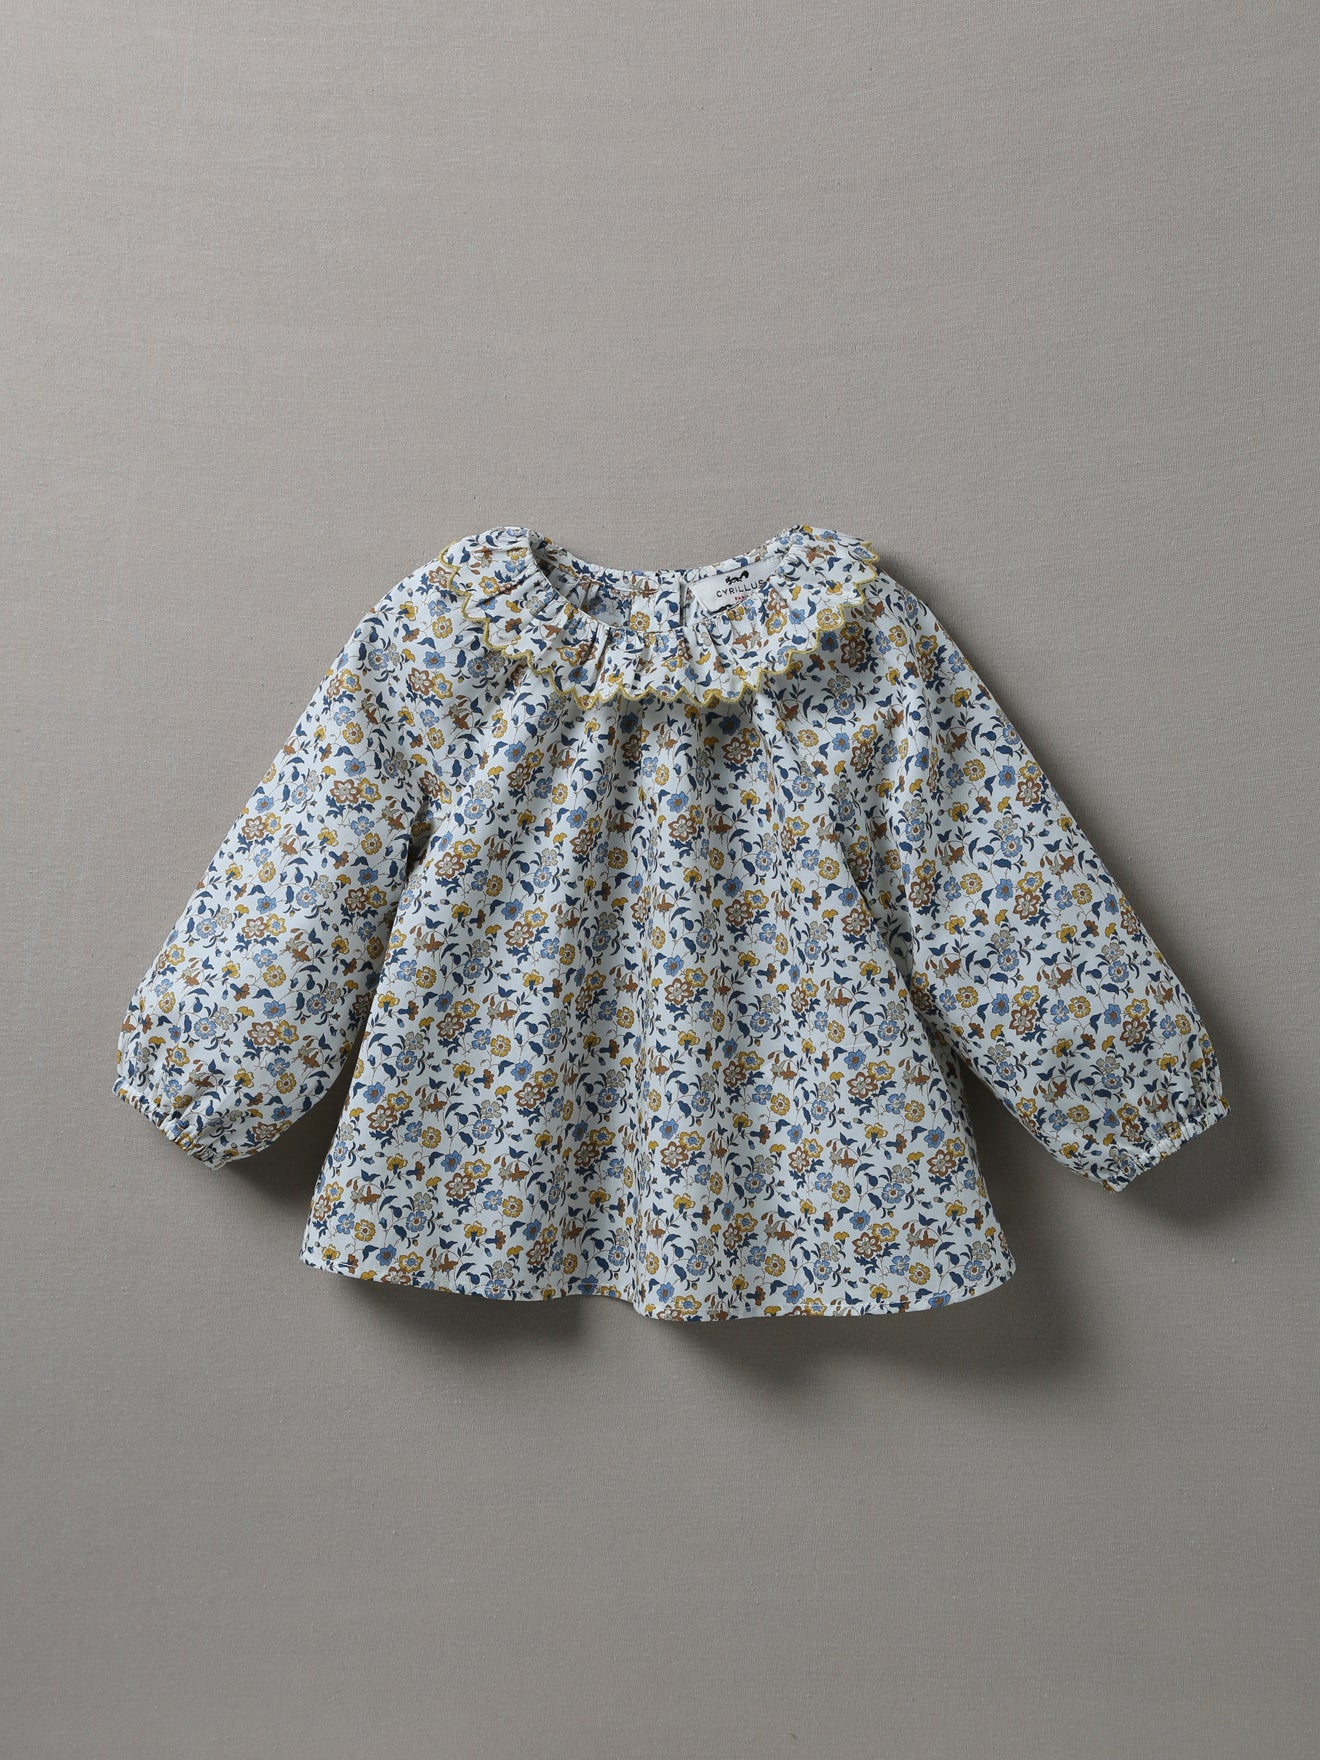 Vêtement bébé made in Lyon : la blouse manches longues Iris